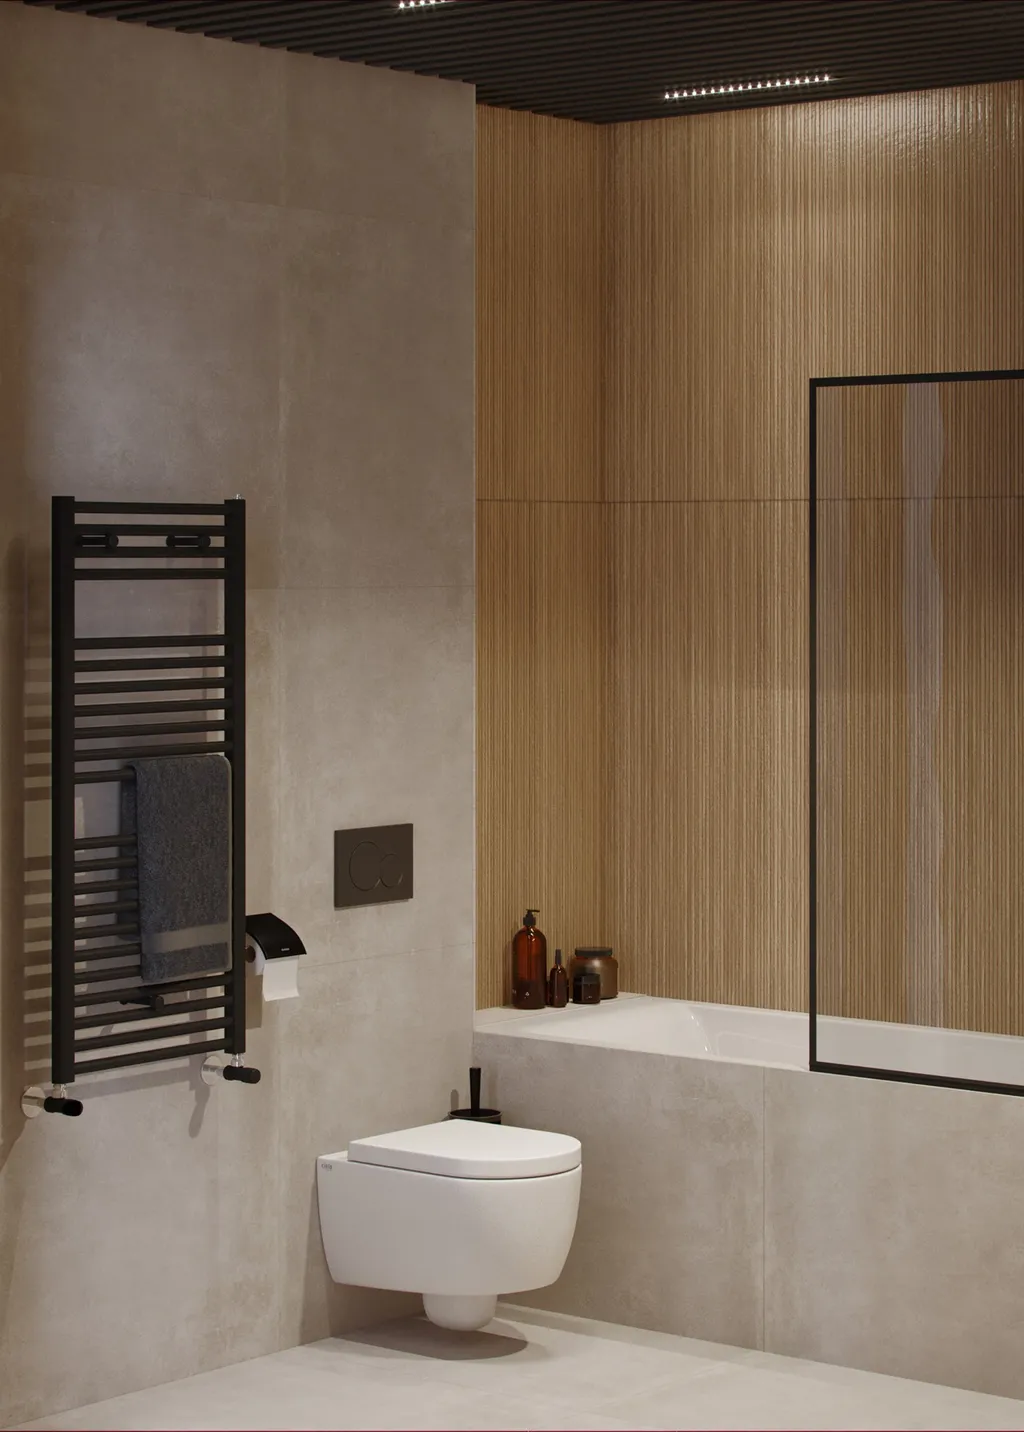 Công trình hoàn thiện nội thất cho phòng tắm căn hộ theo phong cách Minimalism